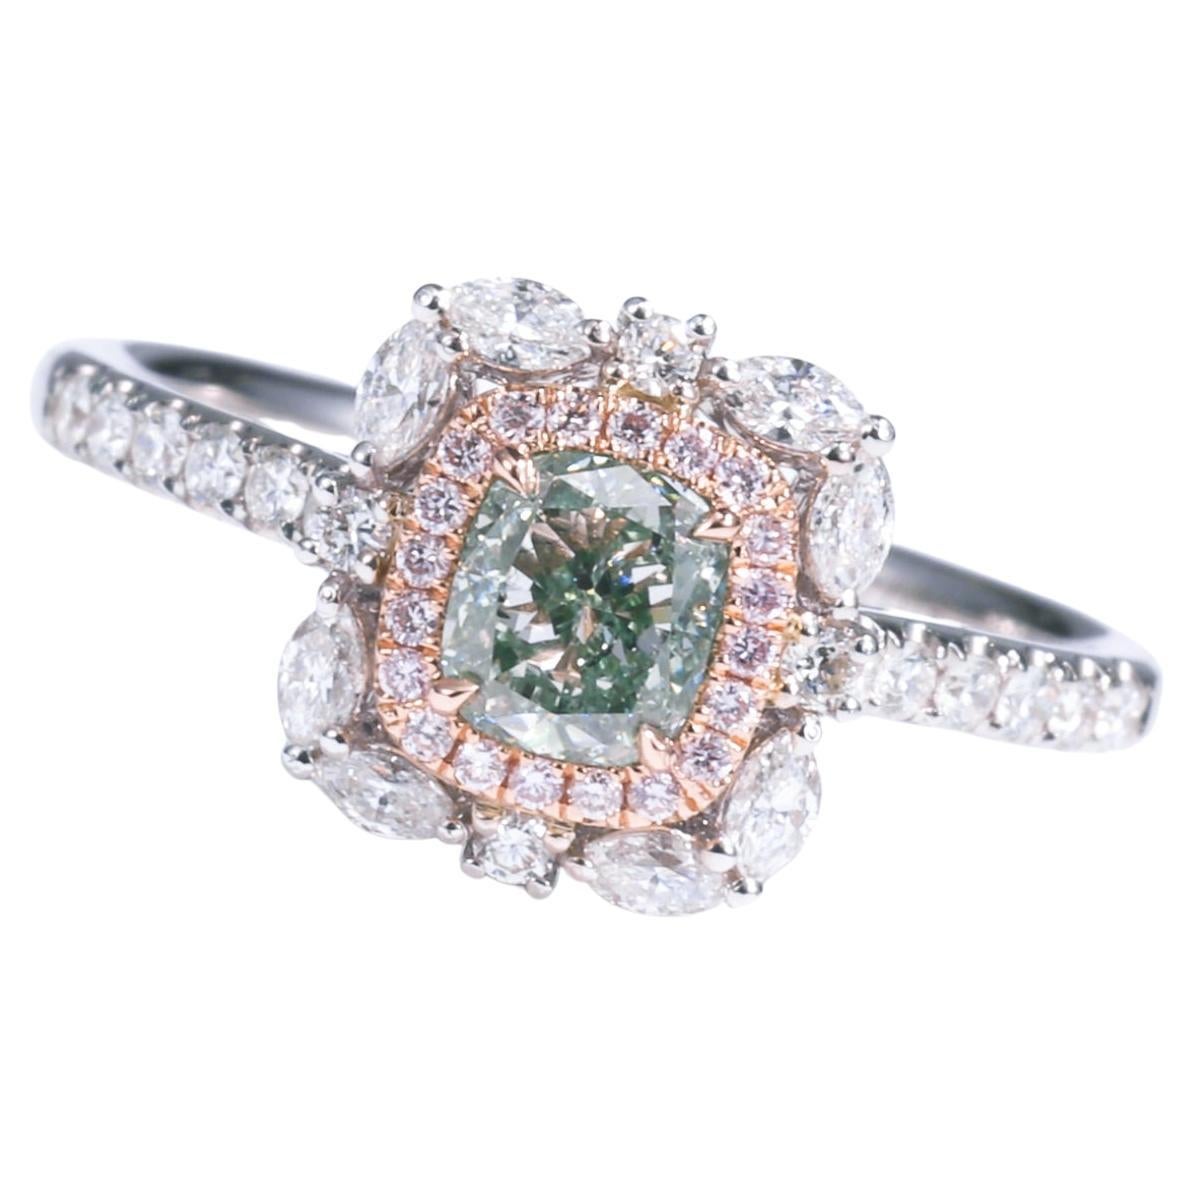 Bague 18 carats certifiée GIA, diamant vert fantaisie naturel de forme coussin de 0,67 carat